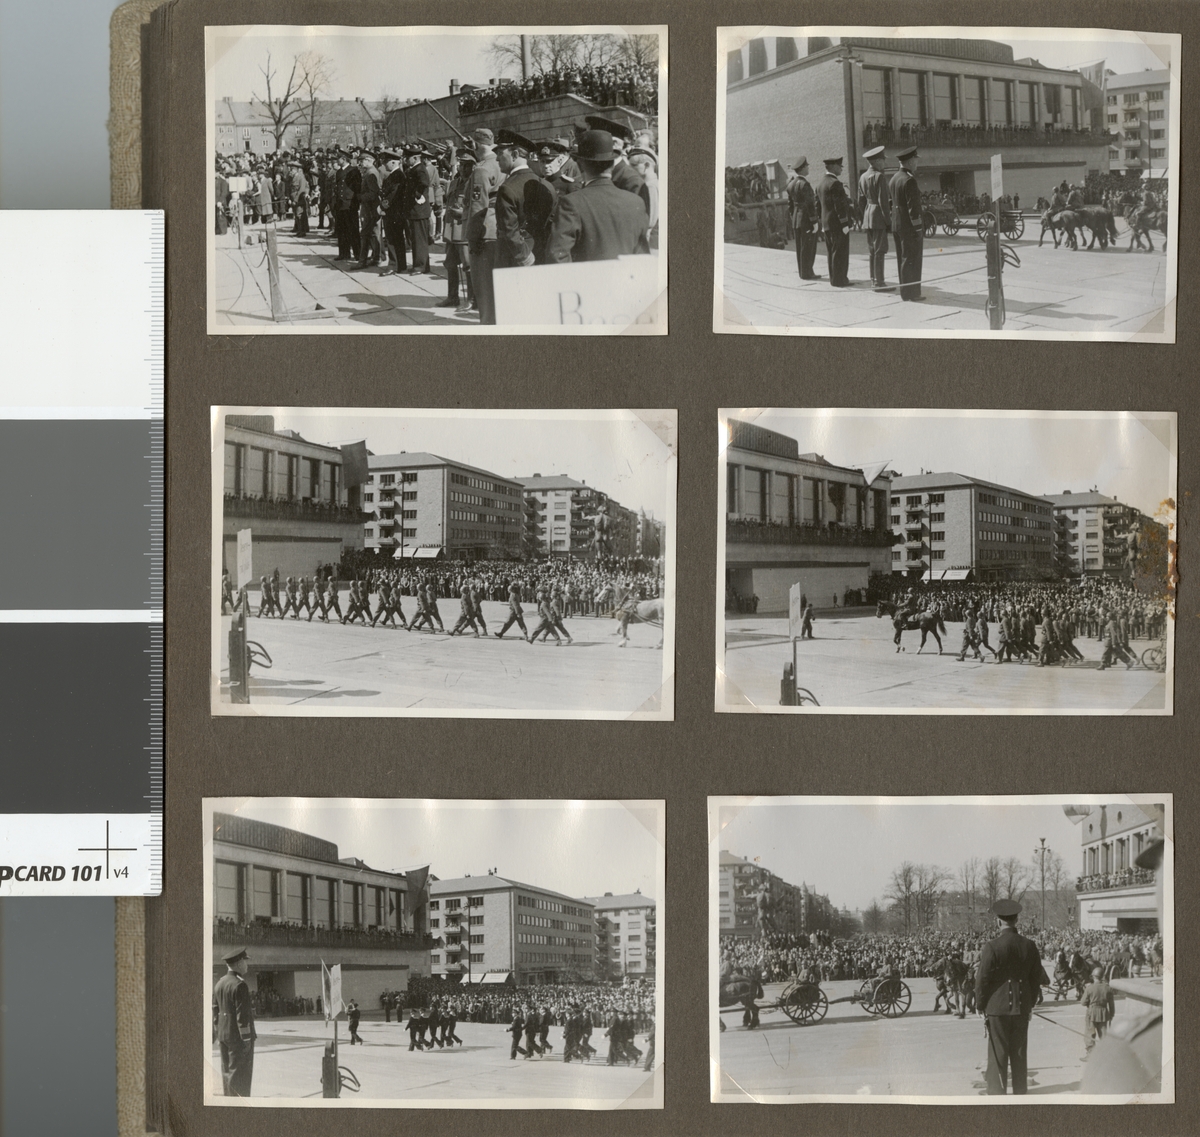 Text i fotoalbum: "Stora Militärparaden genom Göteborg 19/4 1942".